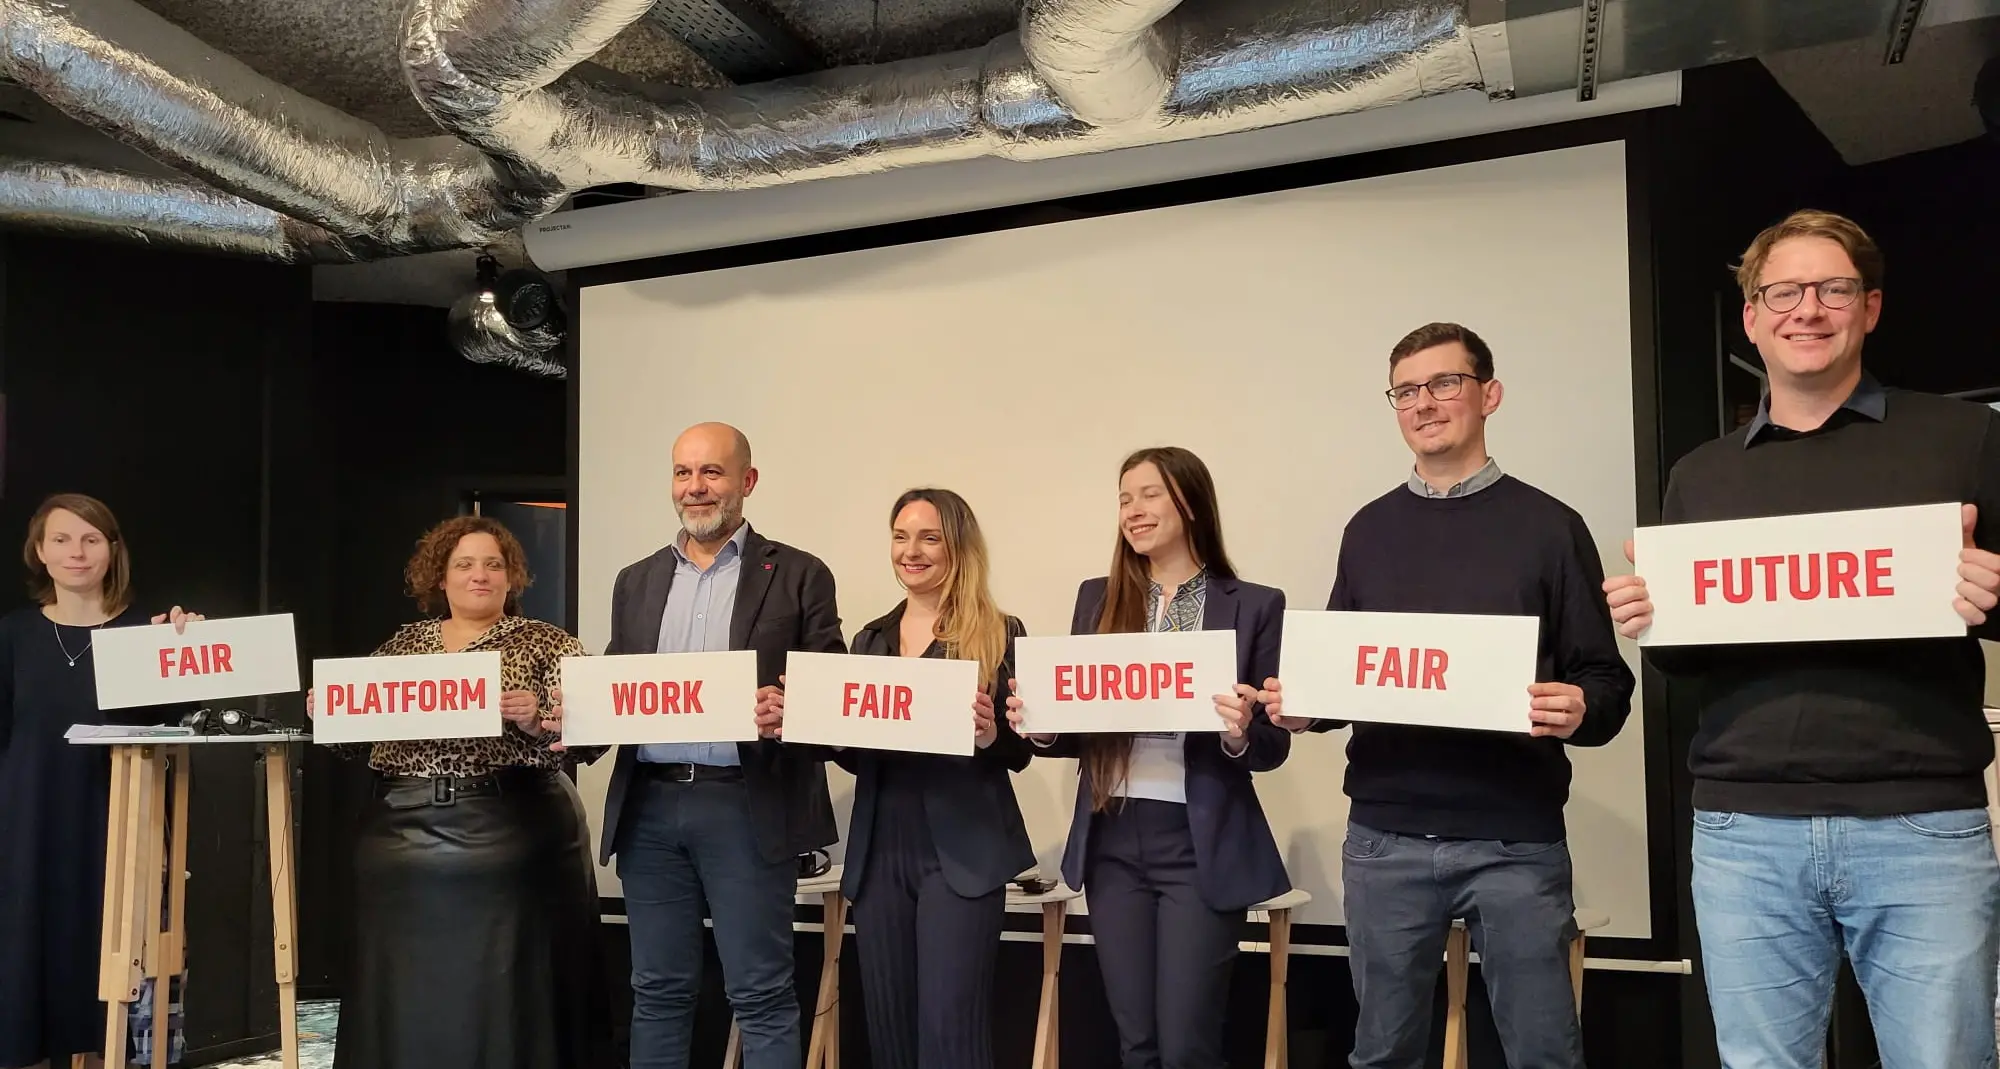 Conferenza finale del progetto europeo Fair work, fair future